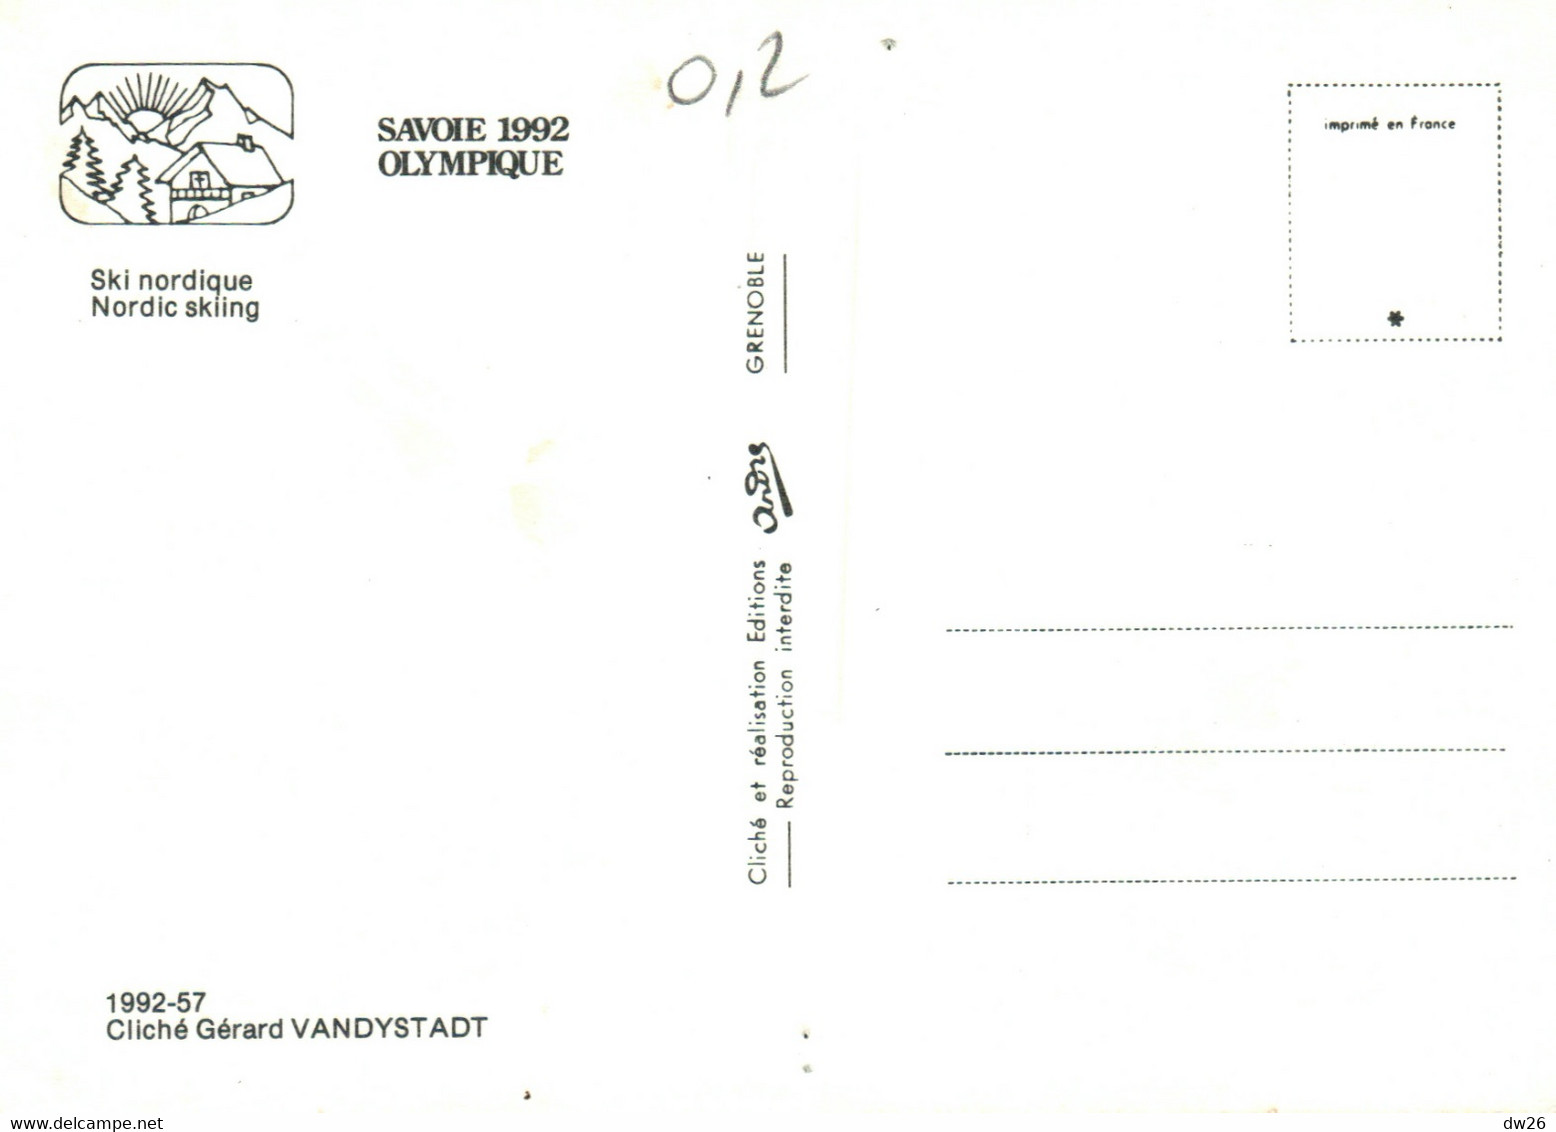 Jeux Olympiques D'Hiver - Savoie Olympique 1992 - Ski Nordique - Photo Vandystadt - Carte Non Circulée - Olympic Games